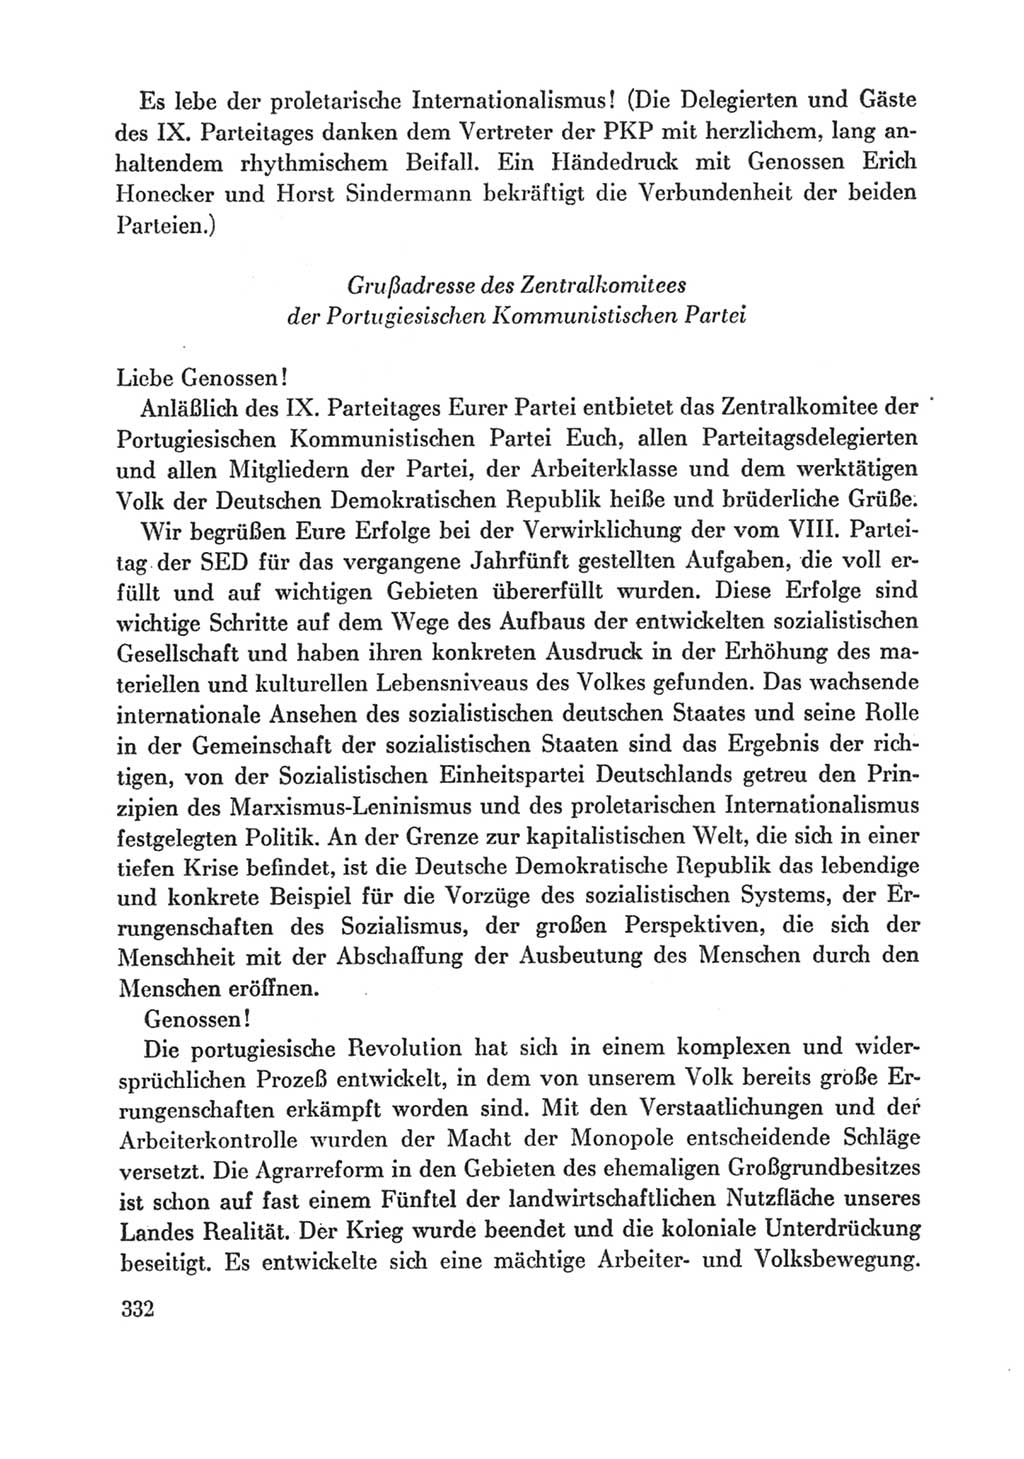 Protokoll der Verhandlungen des Ⅸ. Parteitages der Sozialistischen Einheitspartei Deutschlands (SED) [Deutsche Demokratische Republik (DDR)] 1976, Band 1, Seite 332 (Prot. Verh. Ⅸ. PT SED DDR 1976, Bd. 1, S. 332)